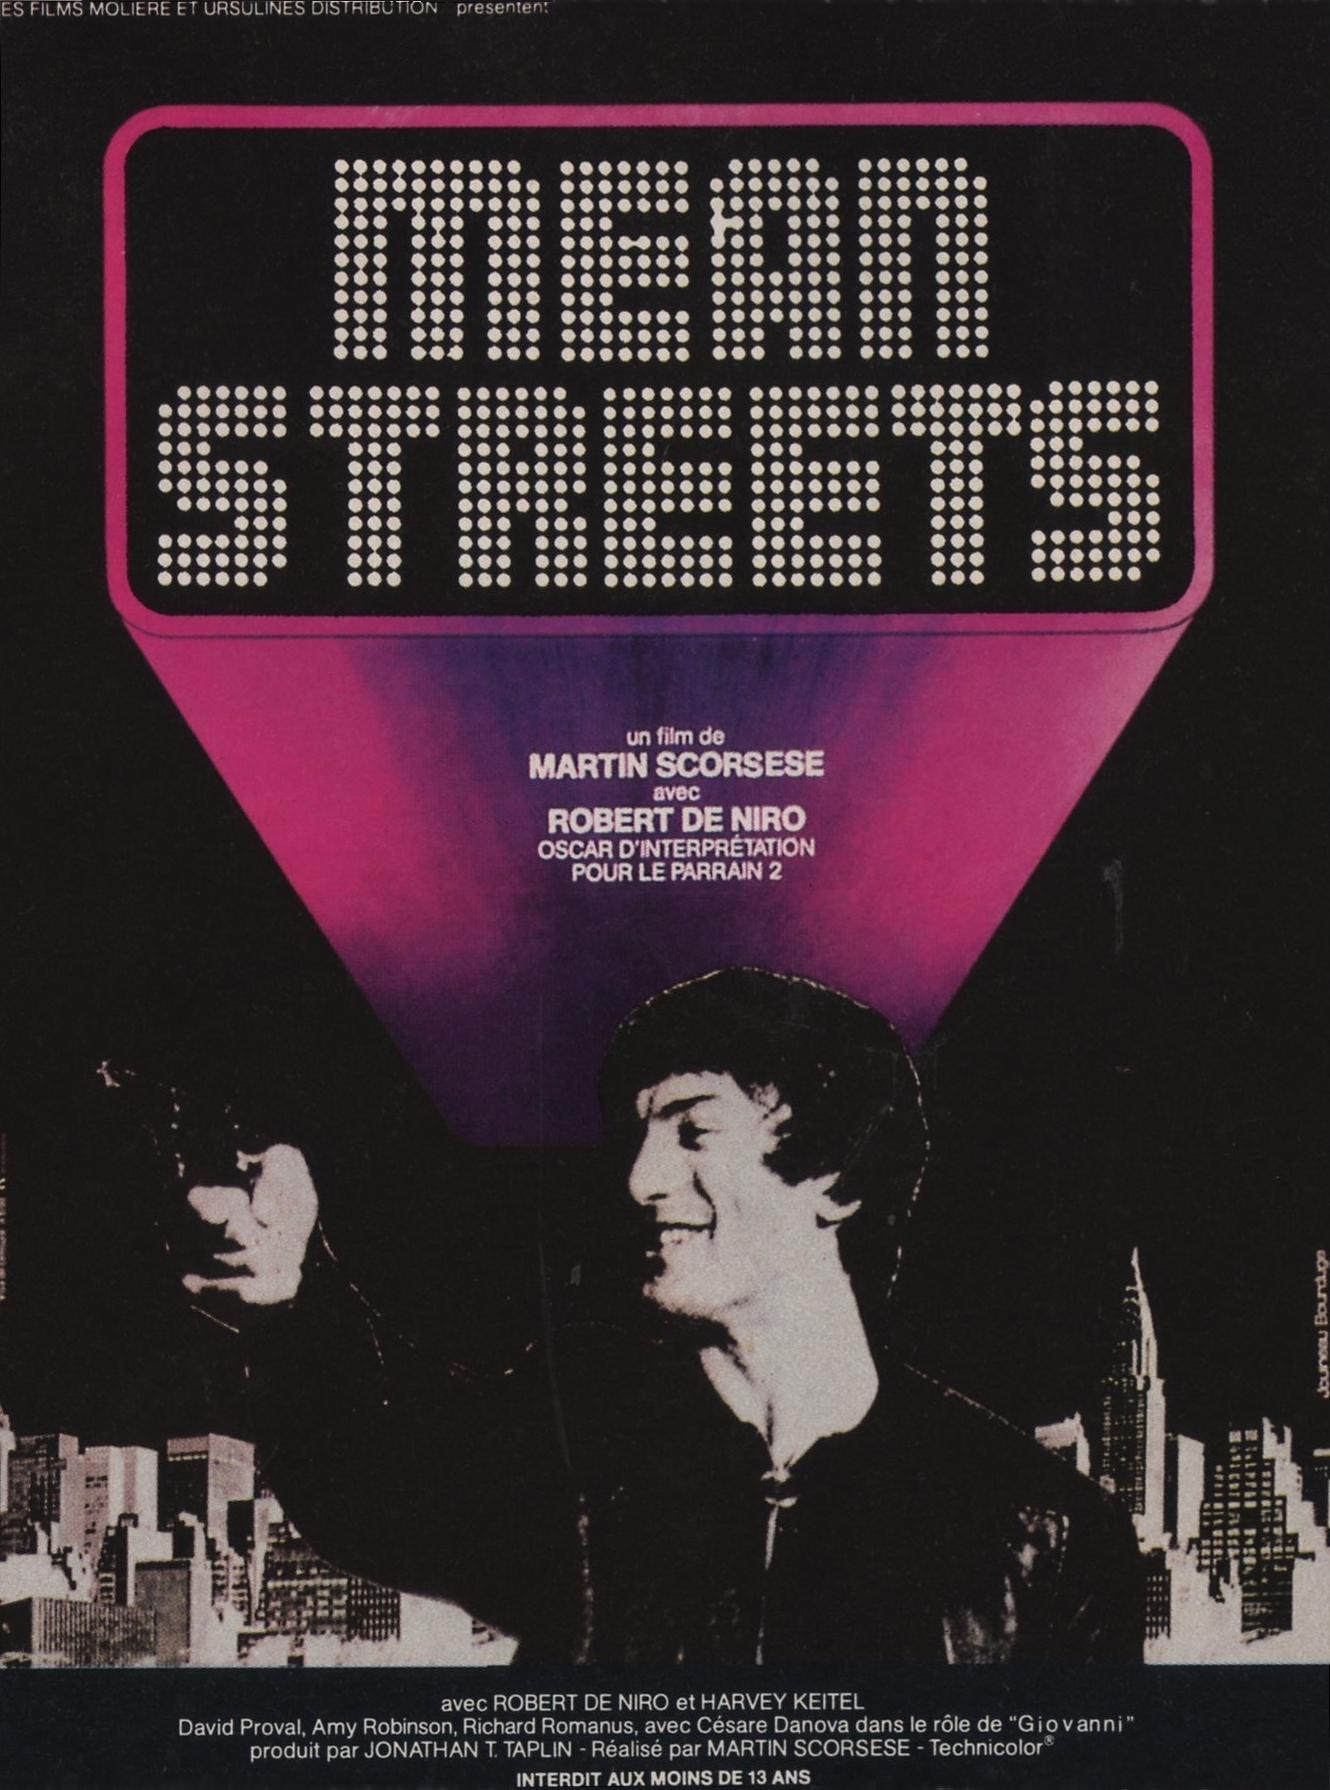 Постер фильма Злые улицы | Mean Streets